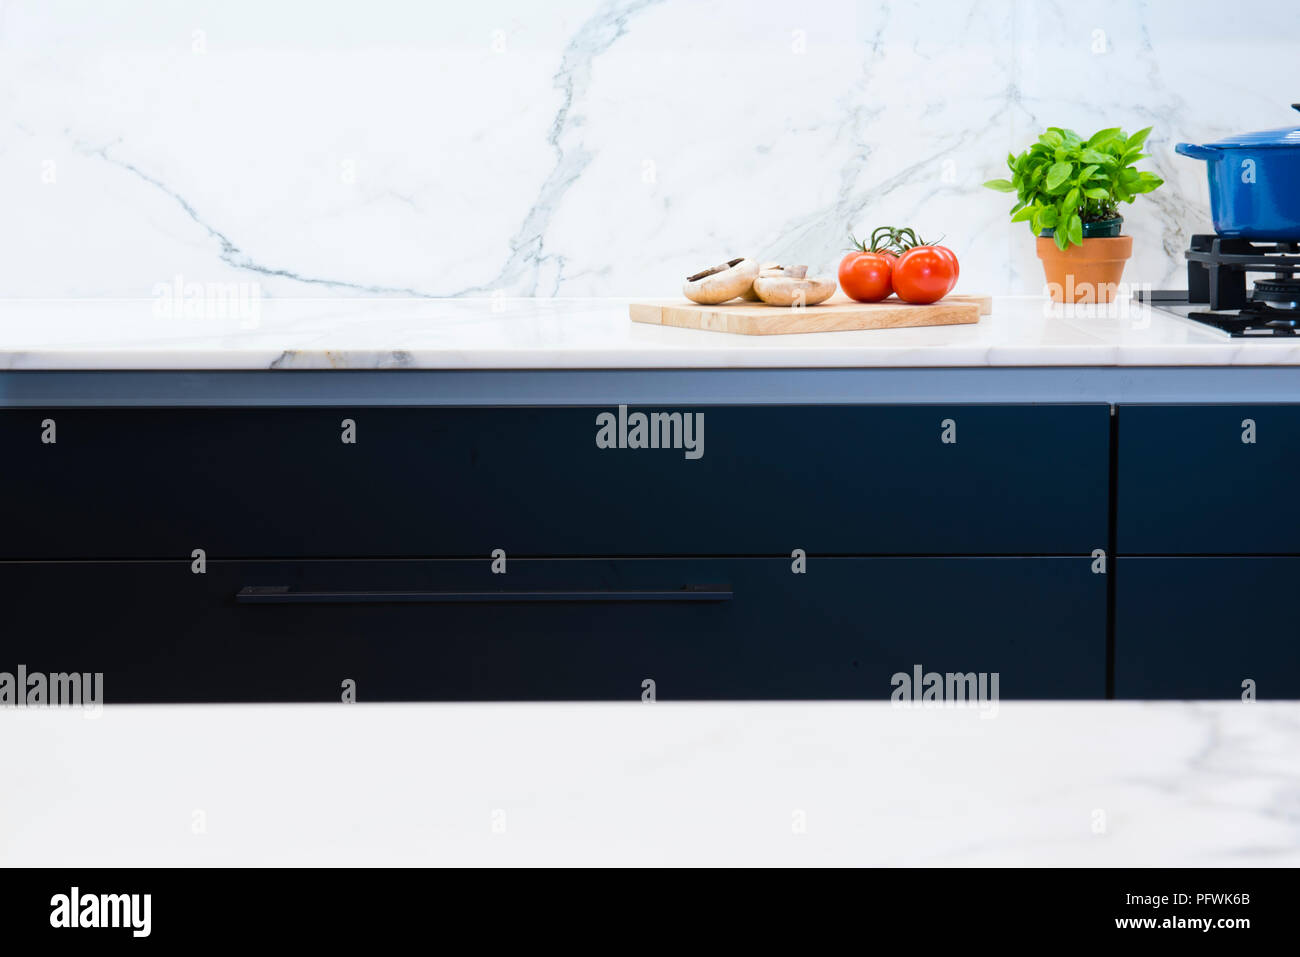 Marmo Calcatta bancone cucina e splash torna con il nero cabinetry in designer cucina contemporanea in australiano home Foto Stock